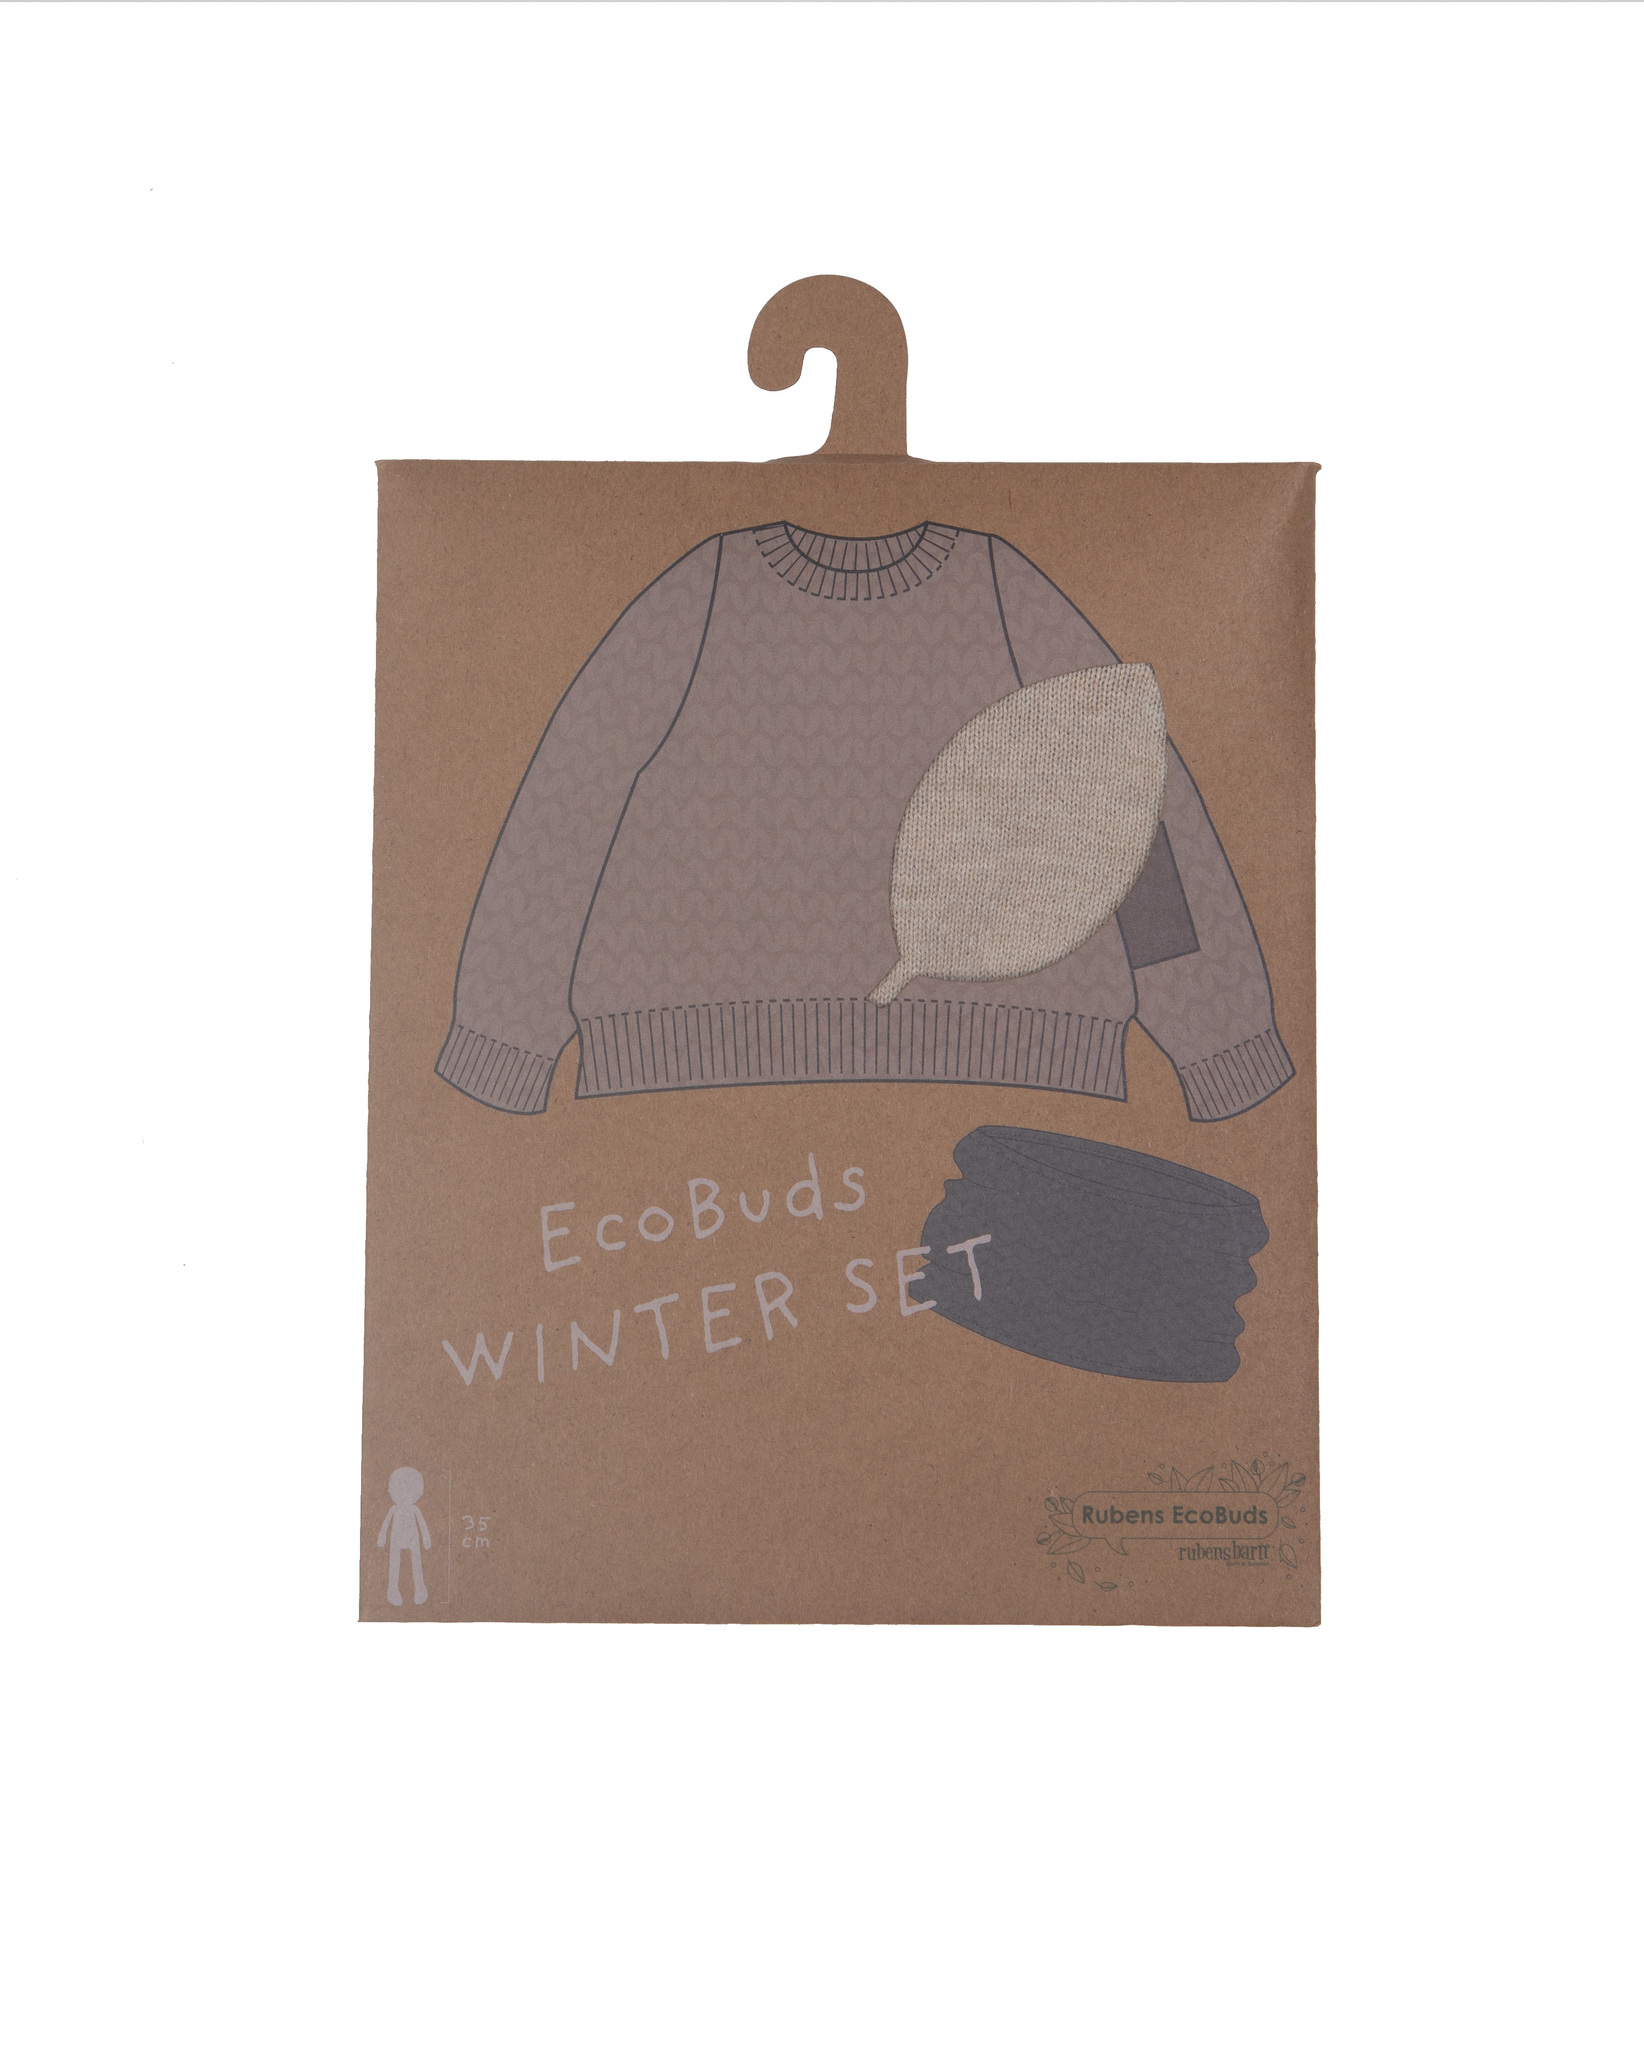 Winter set för Ecobuds, Rubens Barn